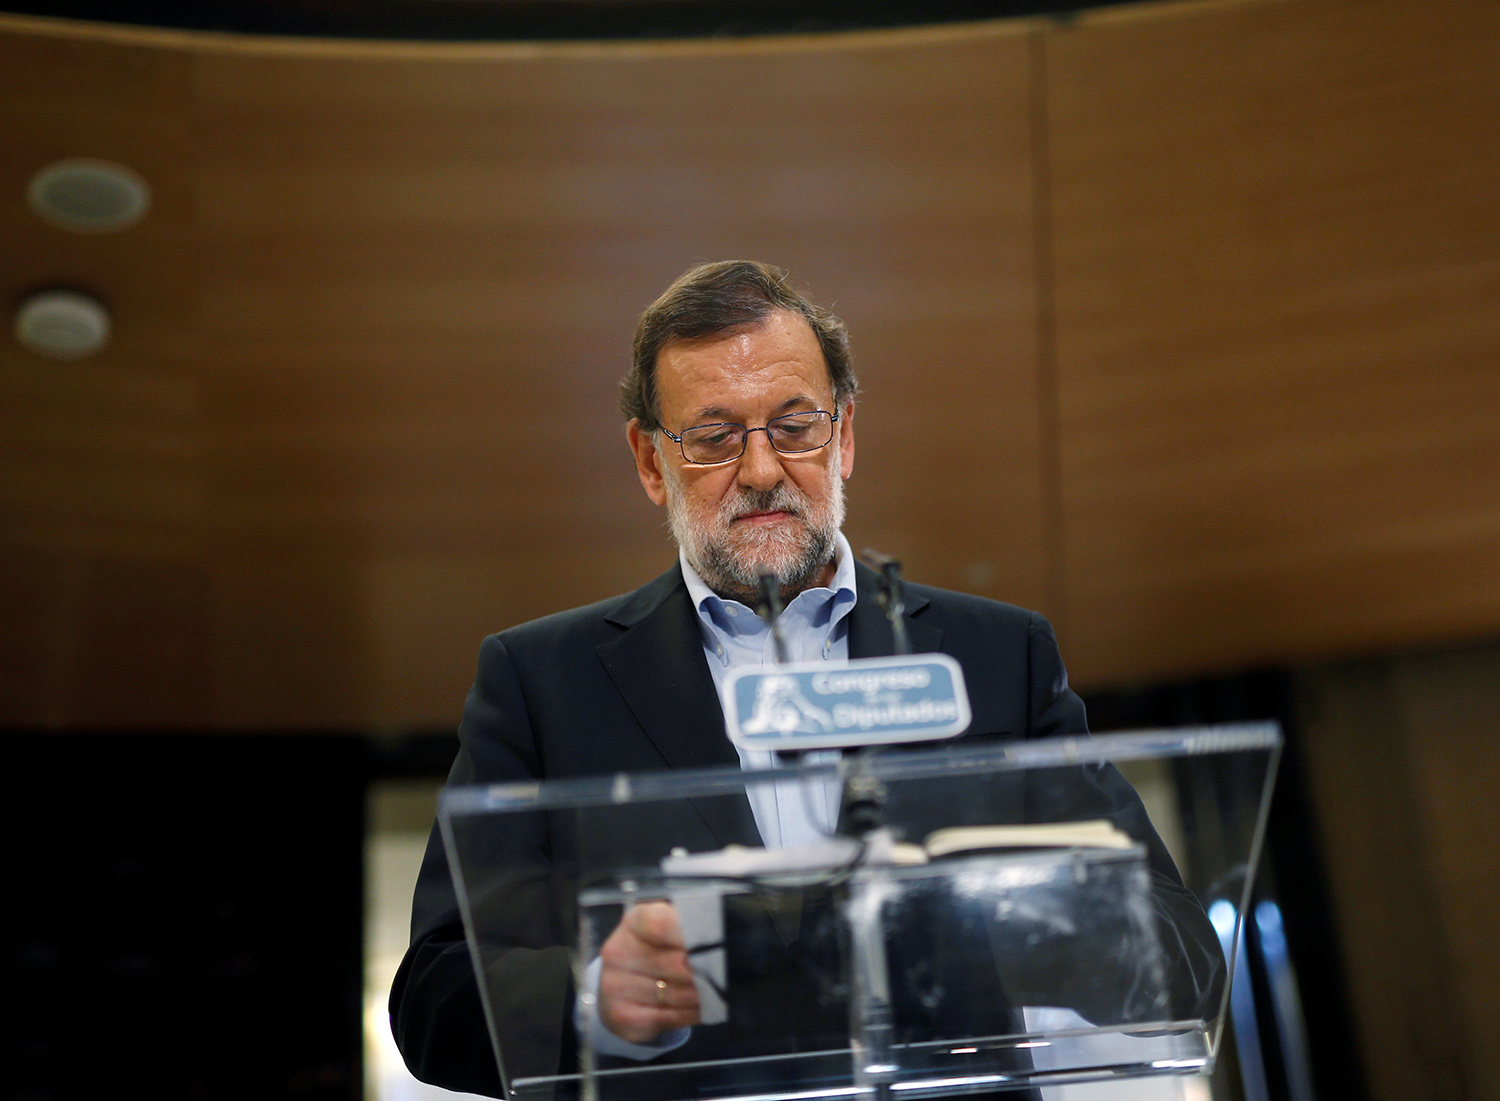 La certeza de Rajoy para presentarse a la investidura sin que den los números